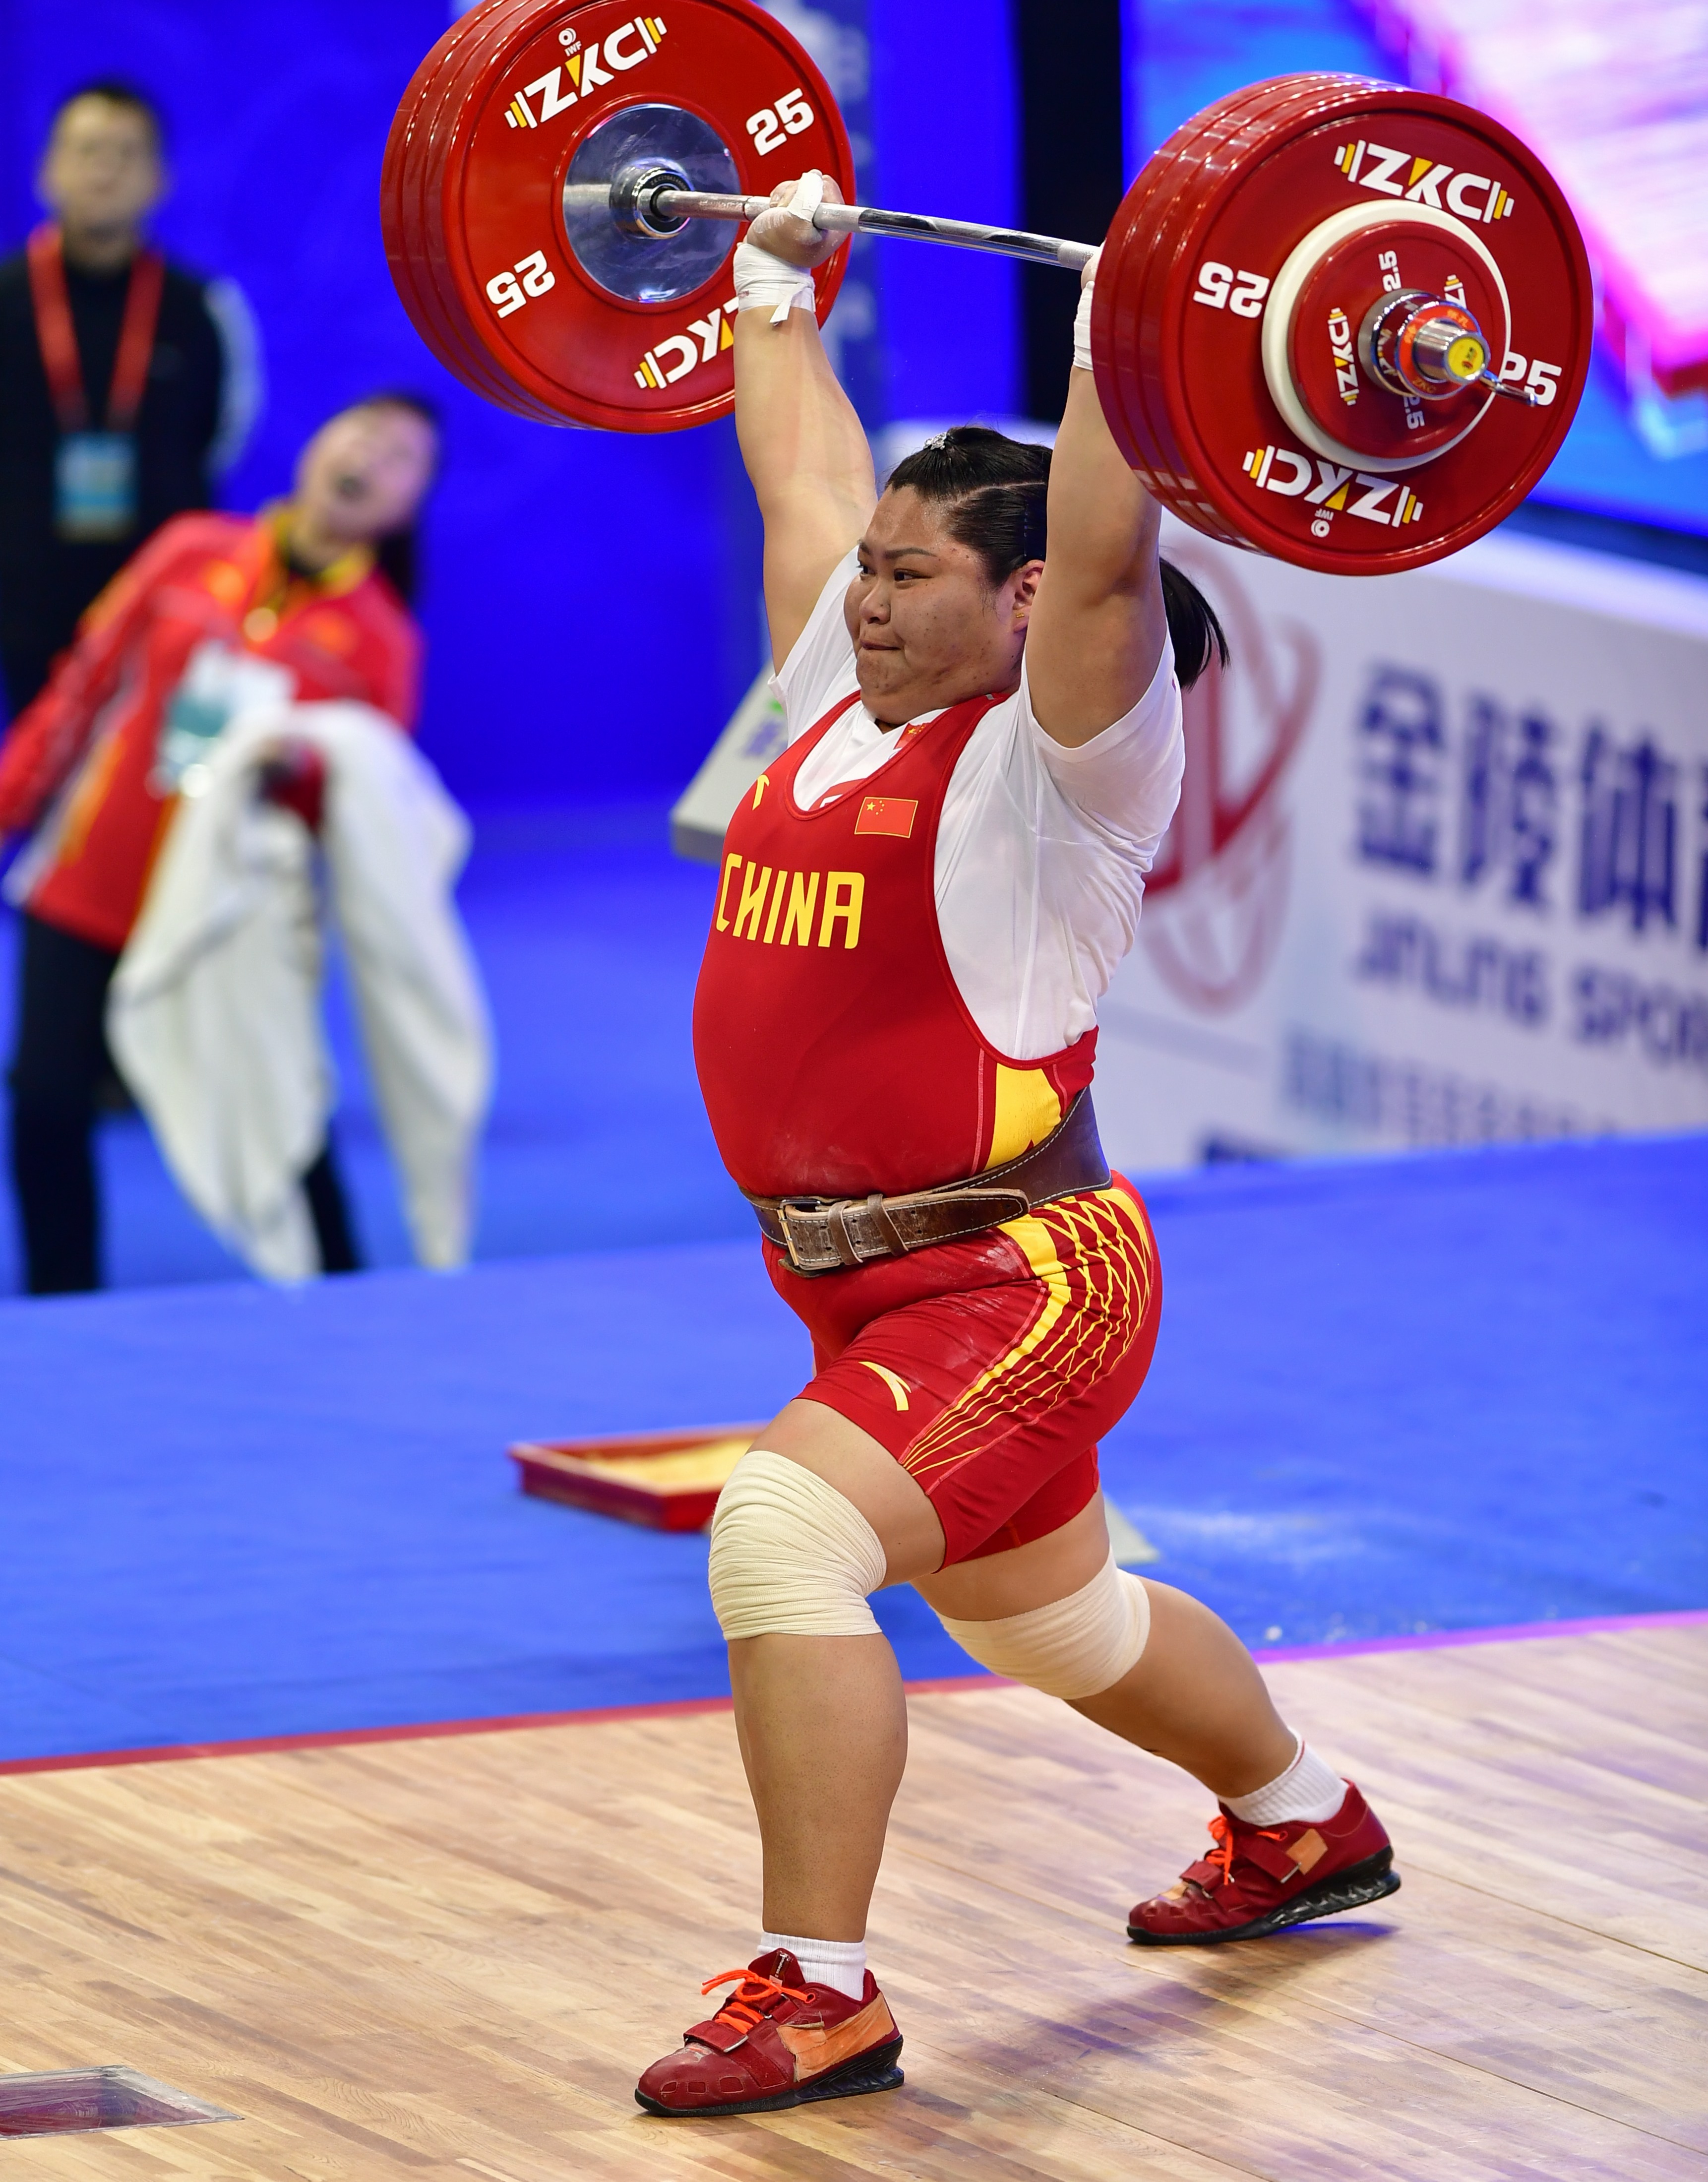 举重——世界杯赛:孟苏平获女子87公斤以上级挺举和总成绩冠军